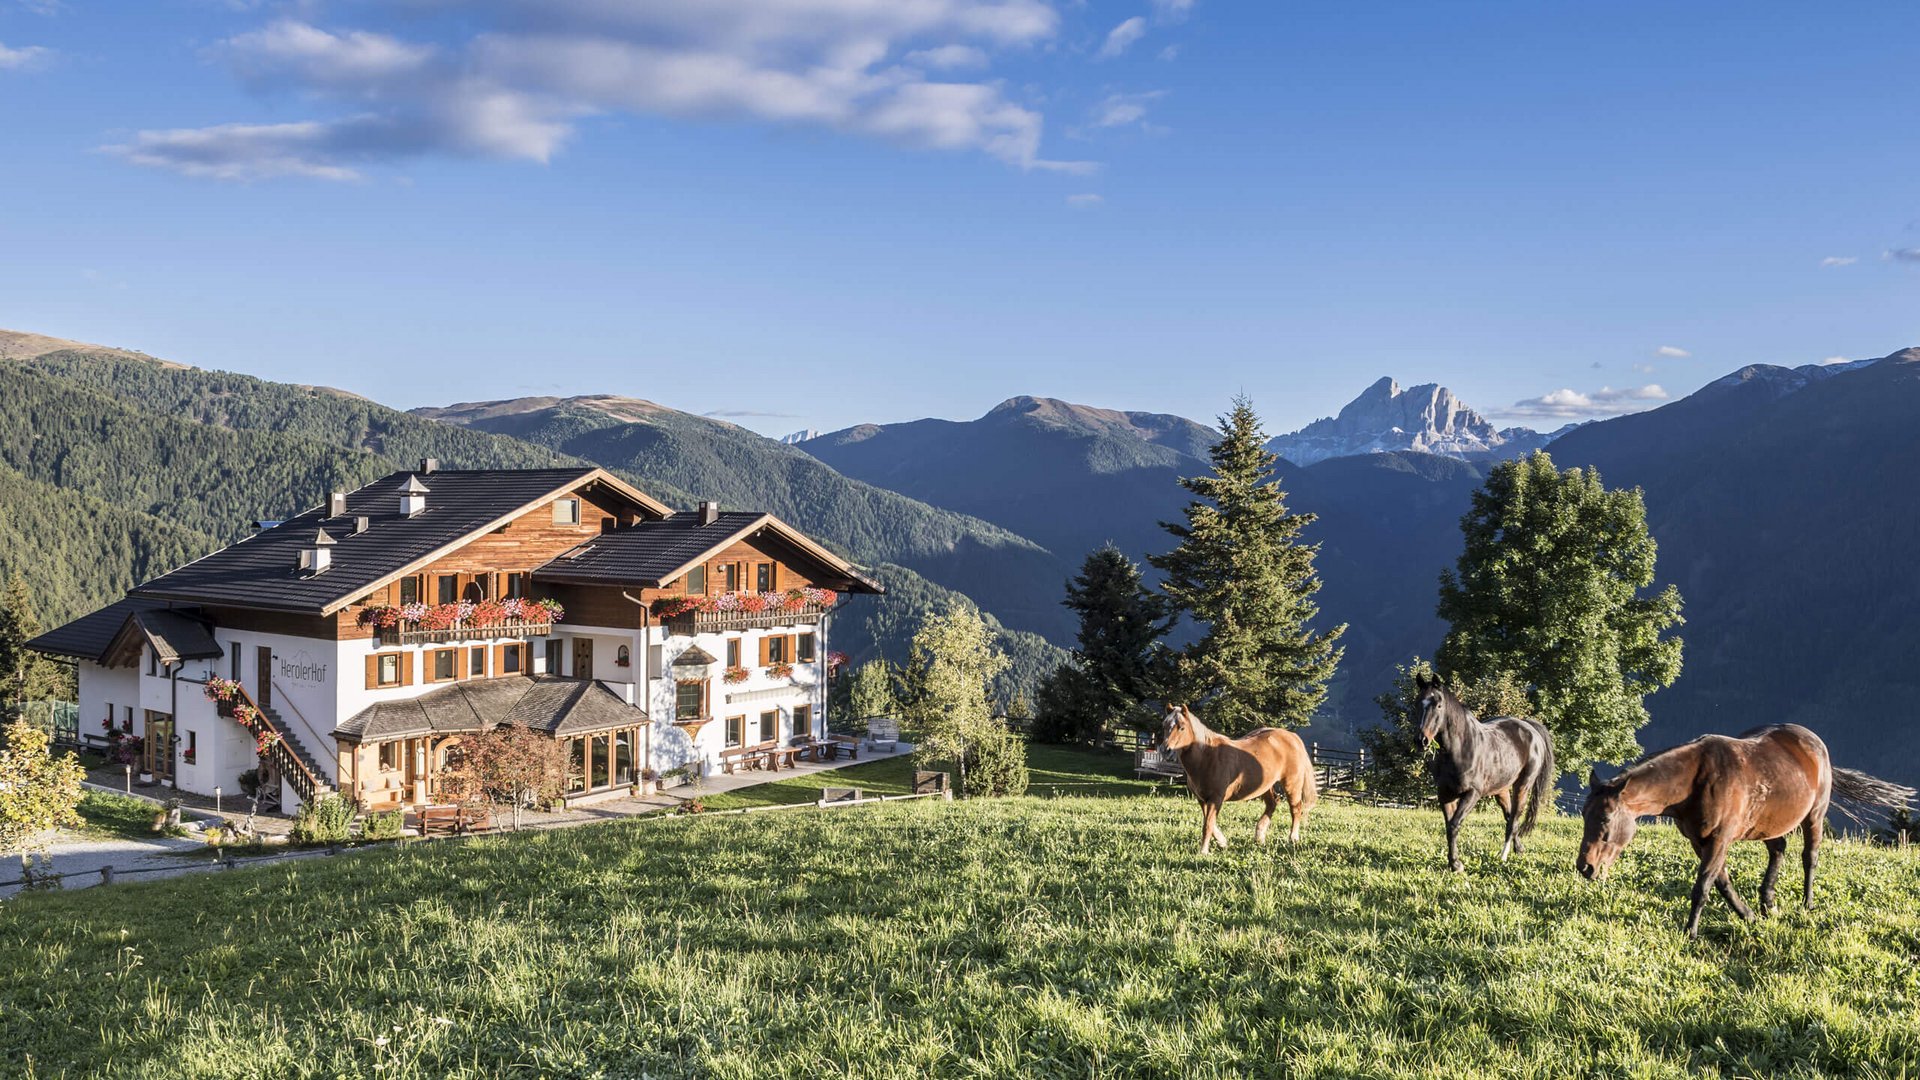 Urlaub in der Natur in Südtirol: Das erwartet Sie bei uns.